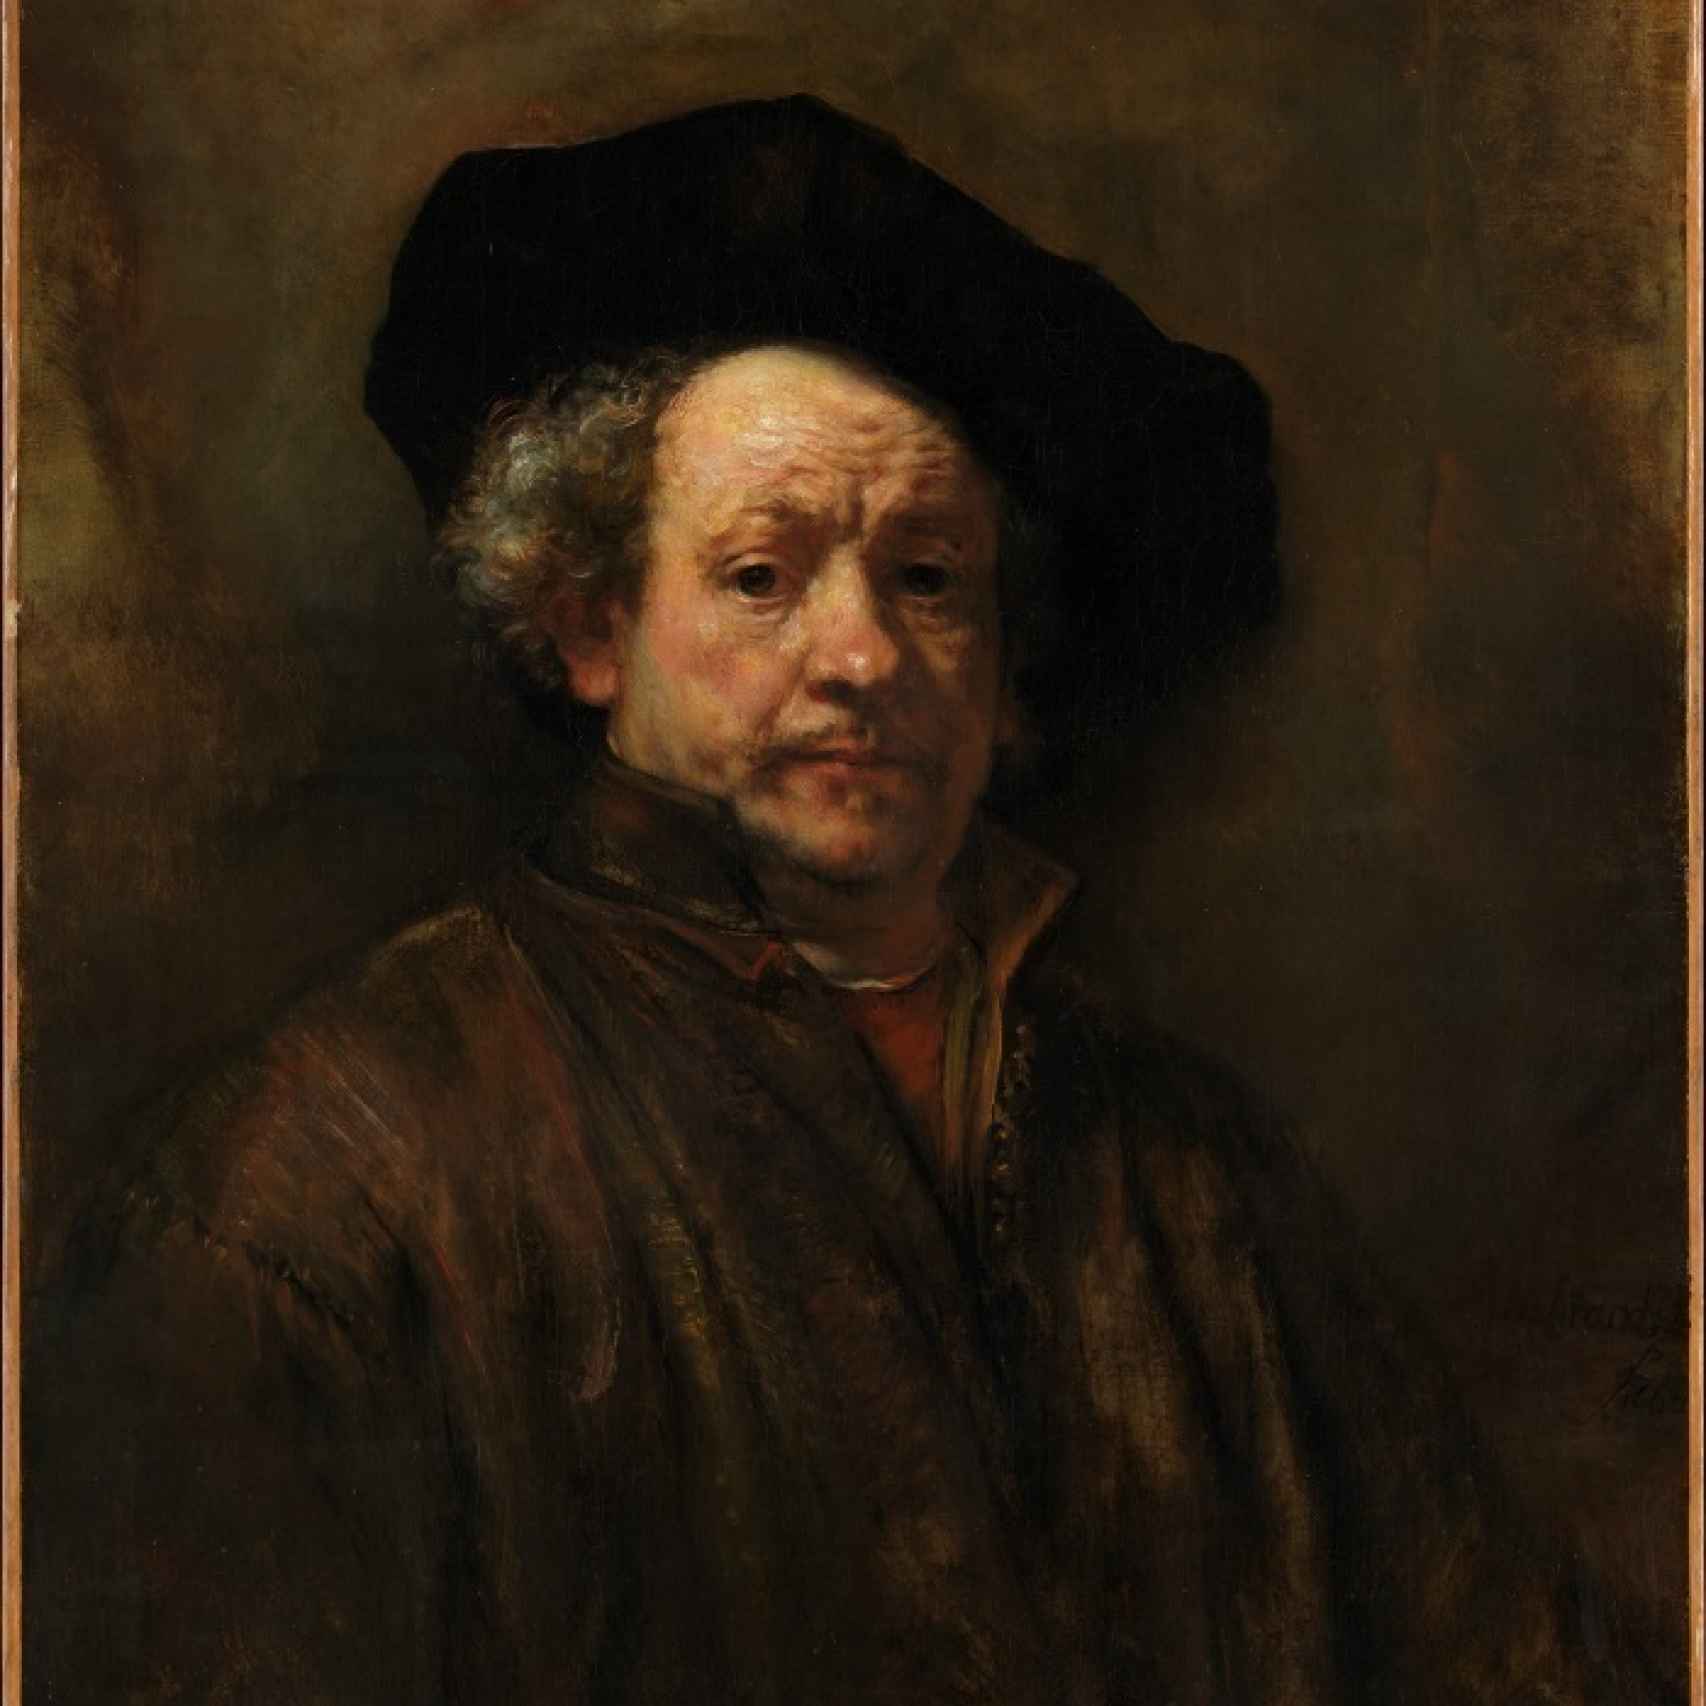 Autorretrato de Rembrandt, en el Metropolitan Museum of Art.